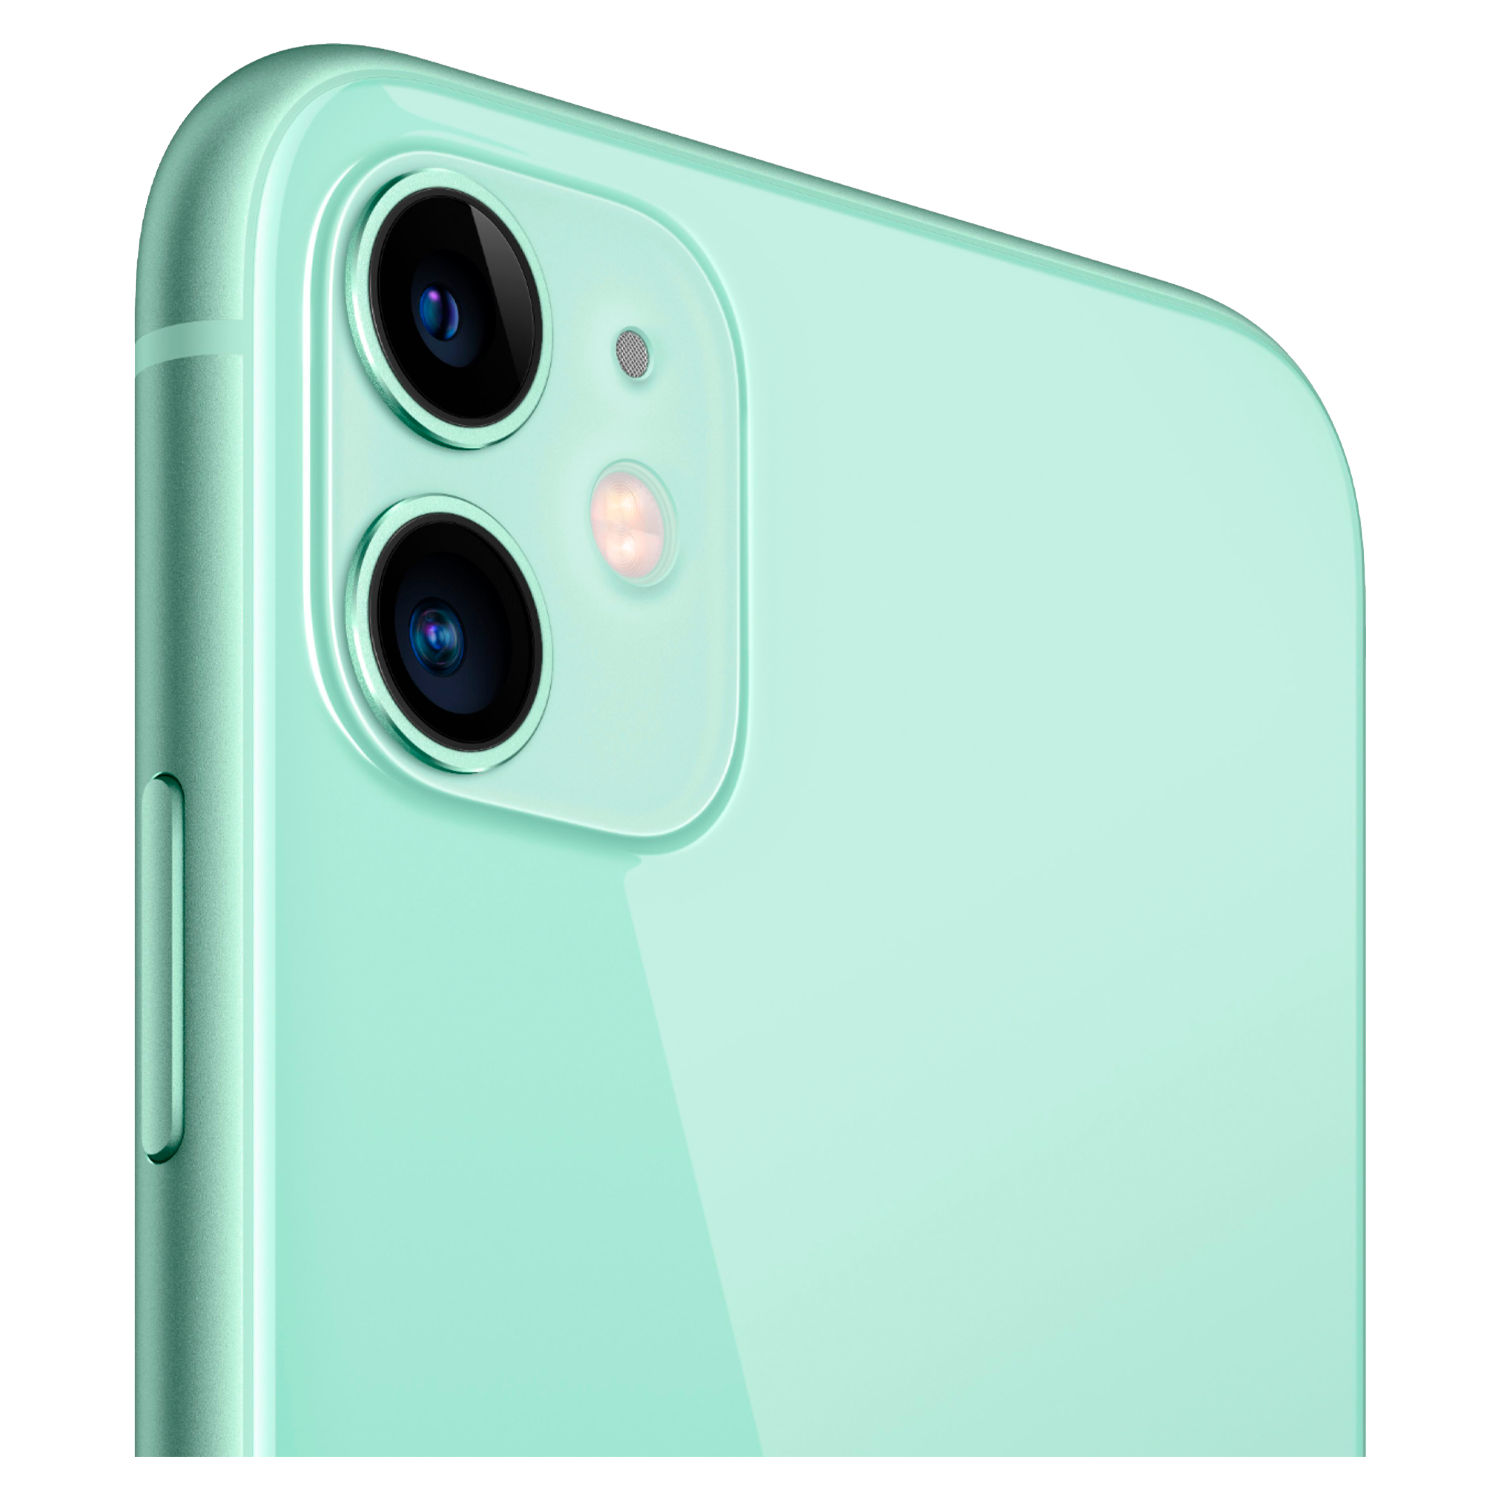 Celular Apple iPhone 11 A2221/2111 64GB / 4GB RAM / Tela 6.1" / Câmeras de 12MP + 12MP e 12MP - Verde (Só Aparelho) (Swap A)